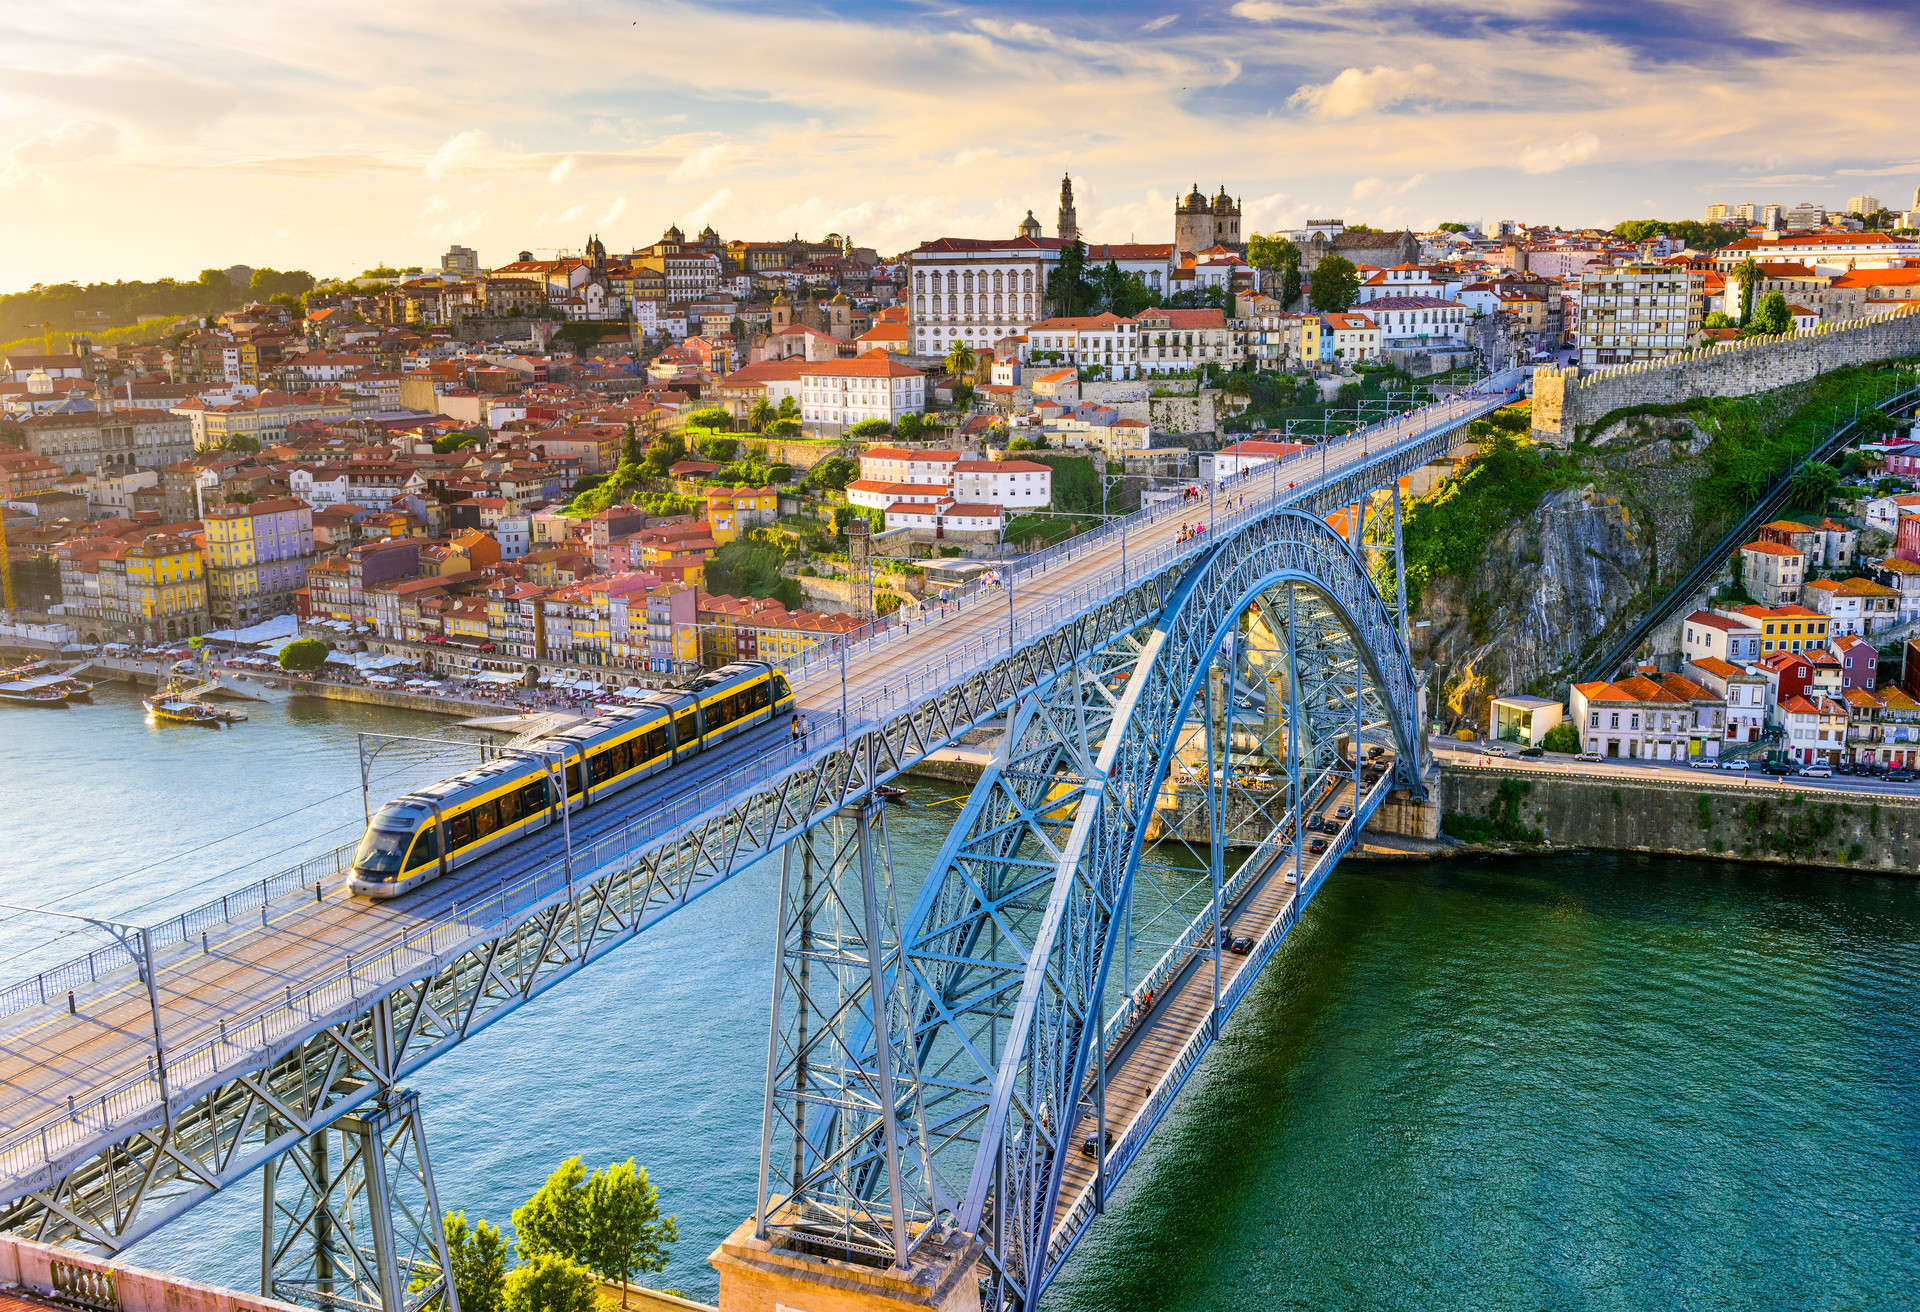 Het authentieke Porto is een levendige havenstad die je het hele jaar door kunt bezoeken